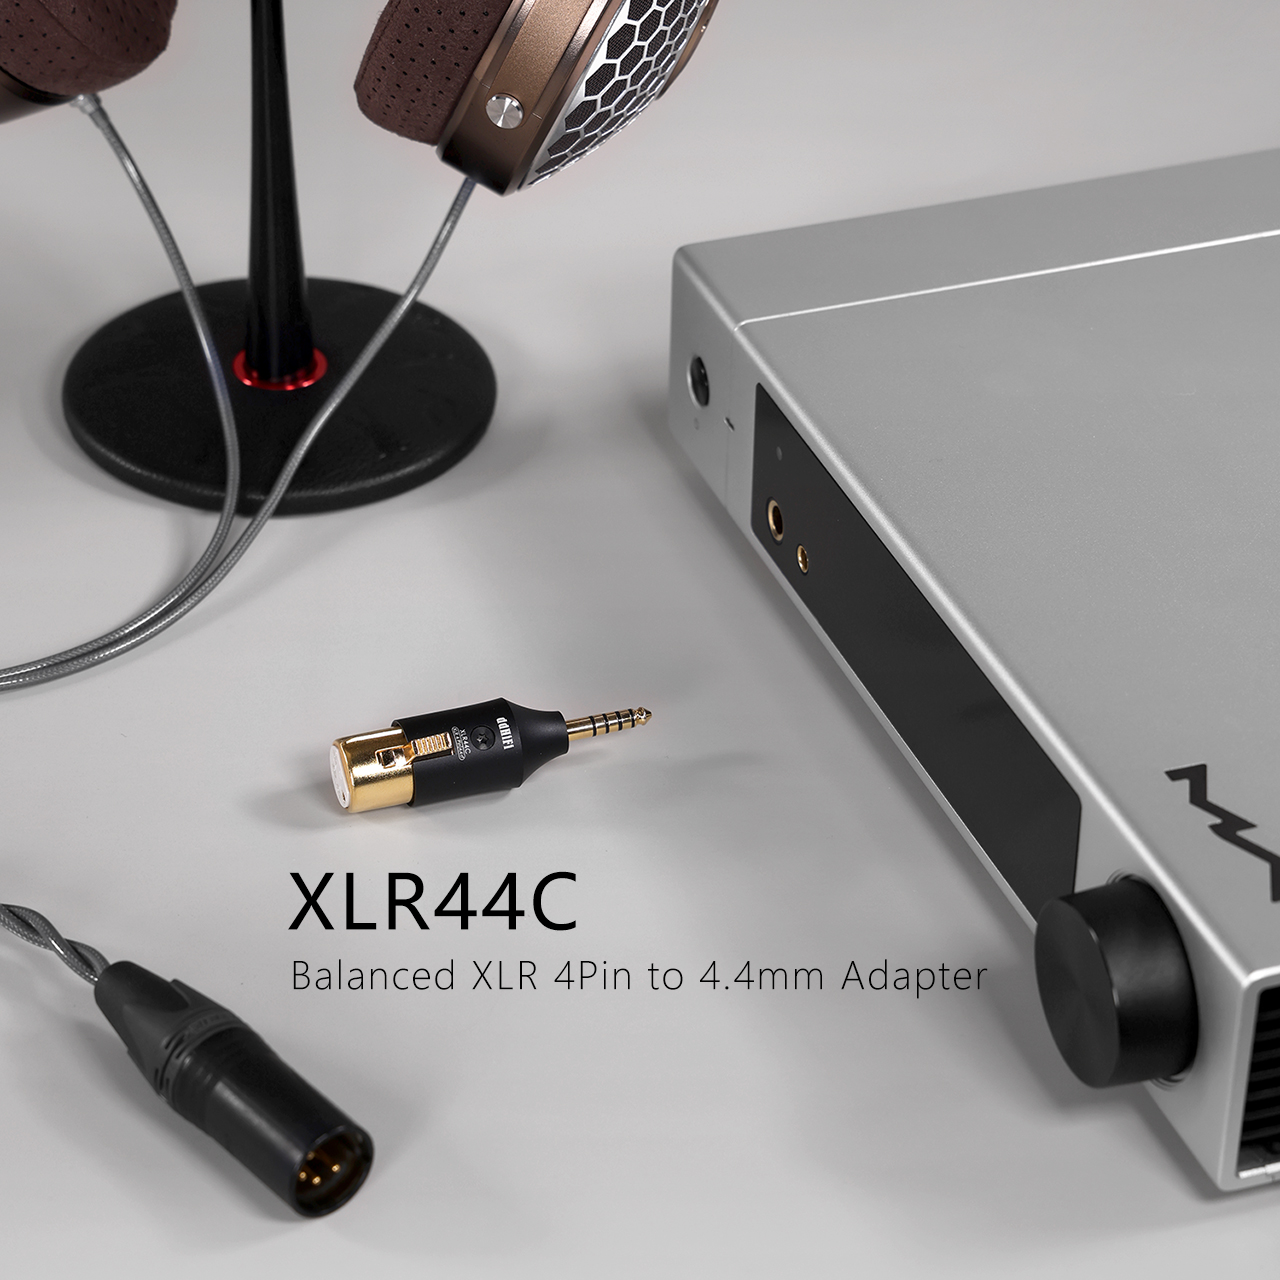 DD ddHiFi XLR44C Balanced XLR 4.4 adapter audio accessory.